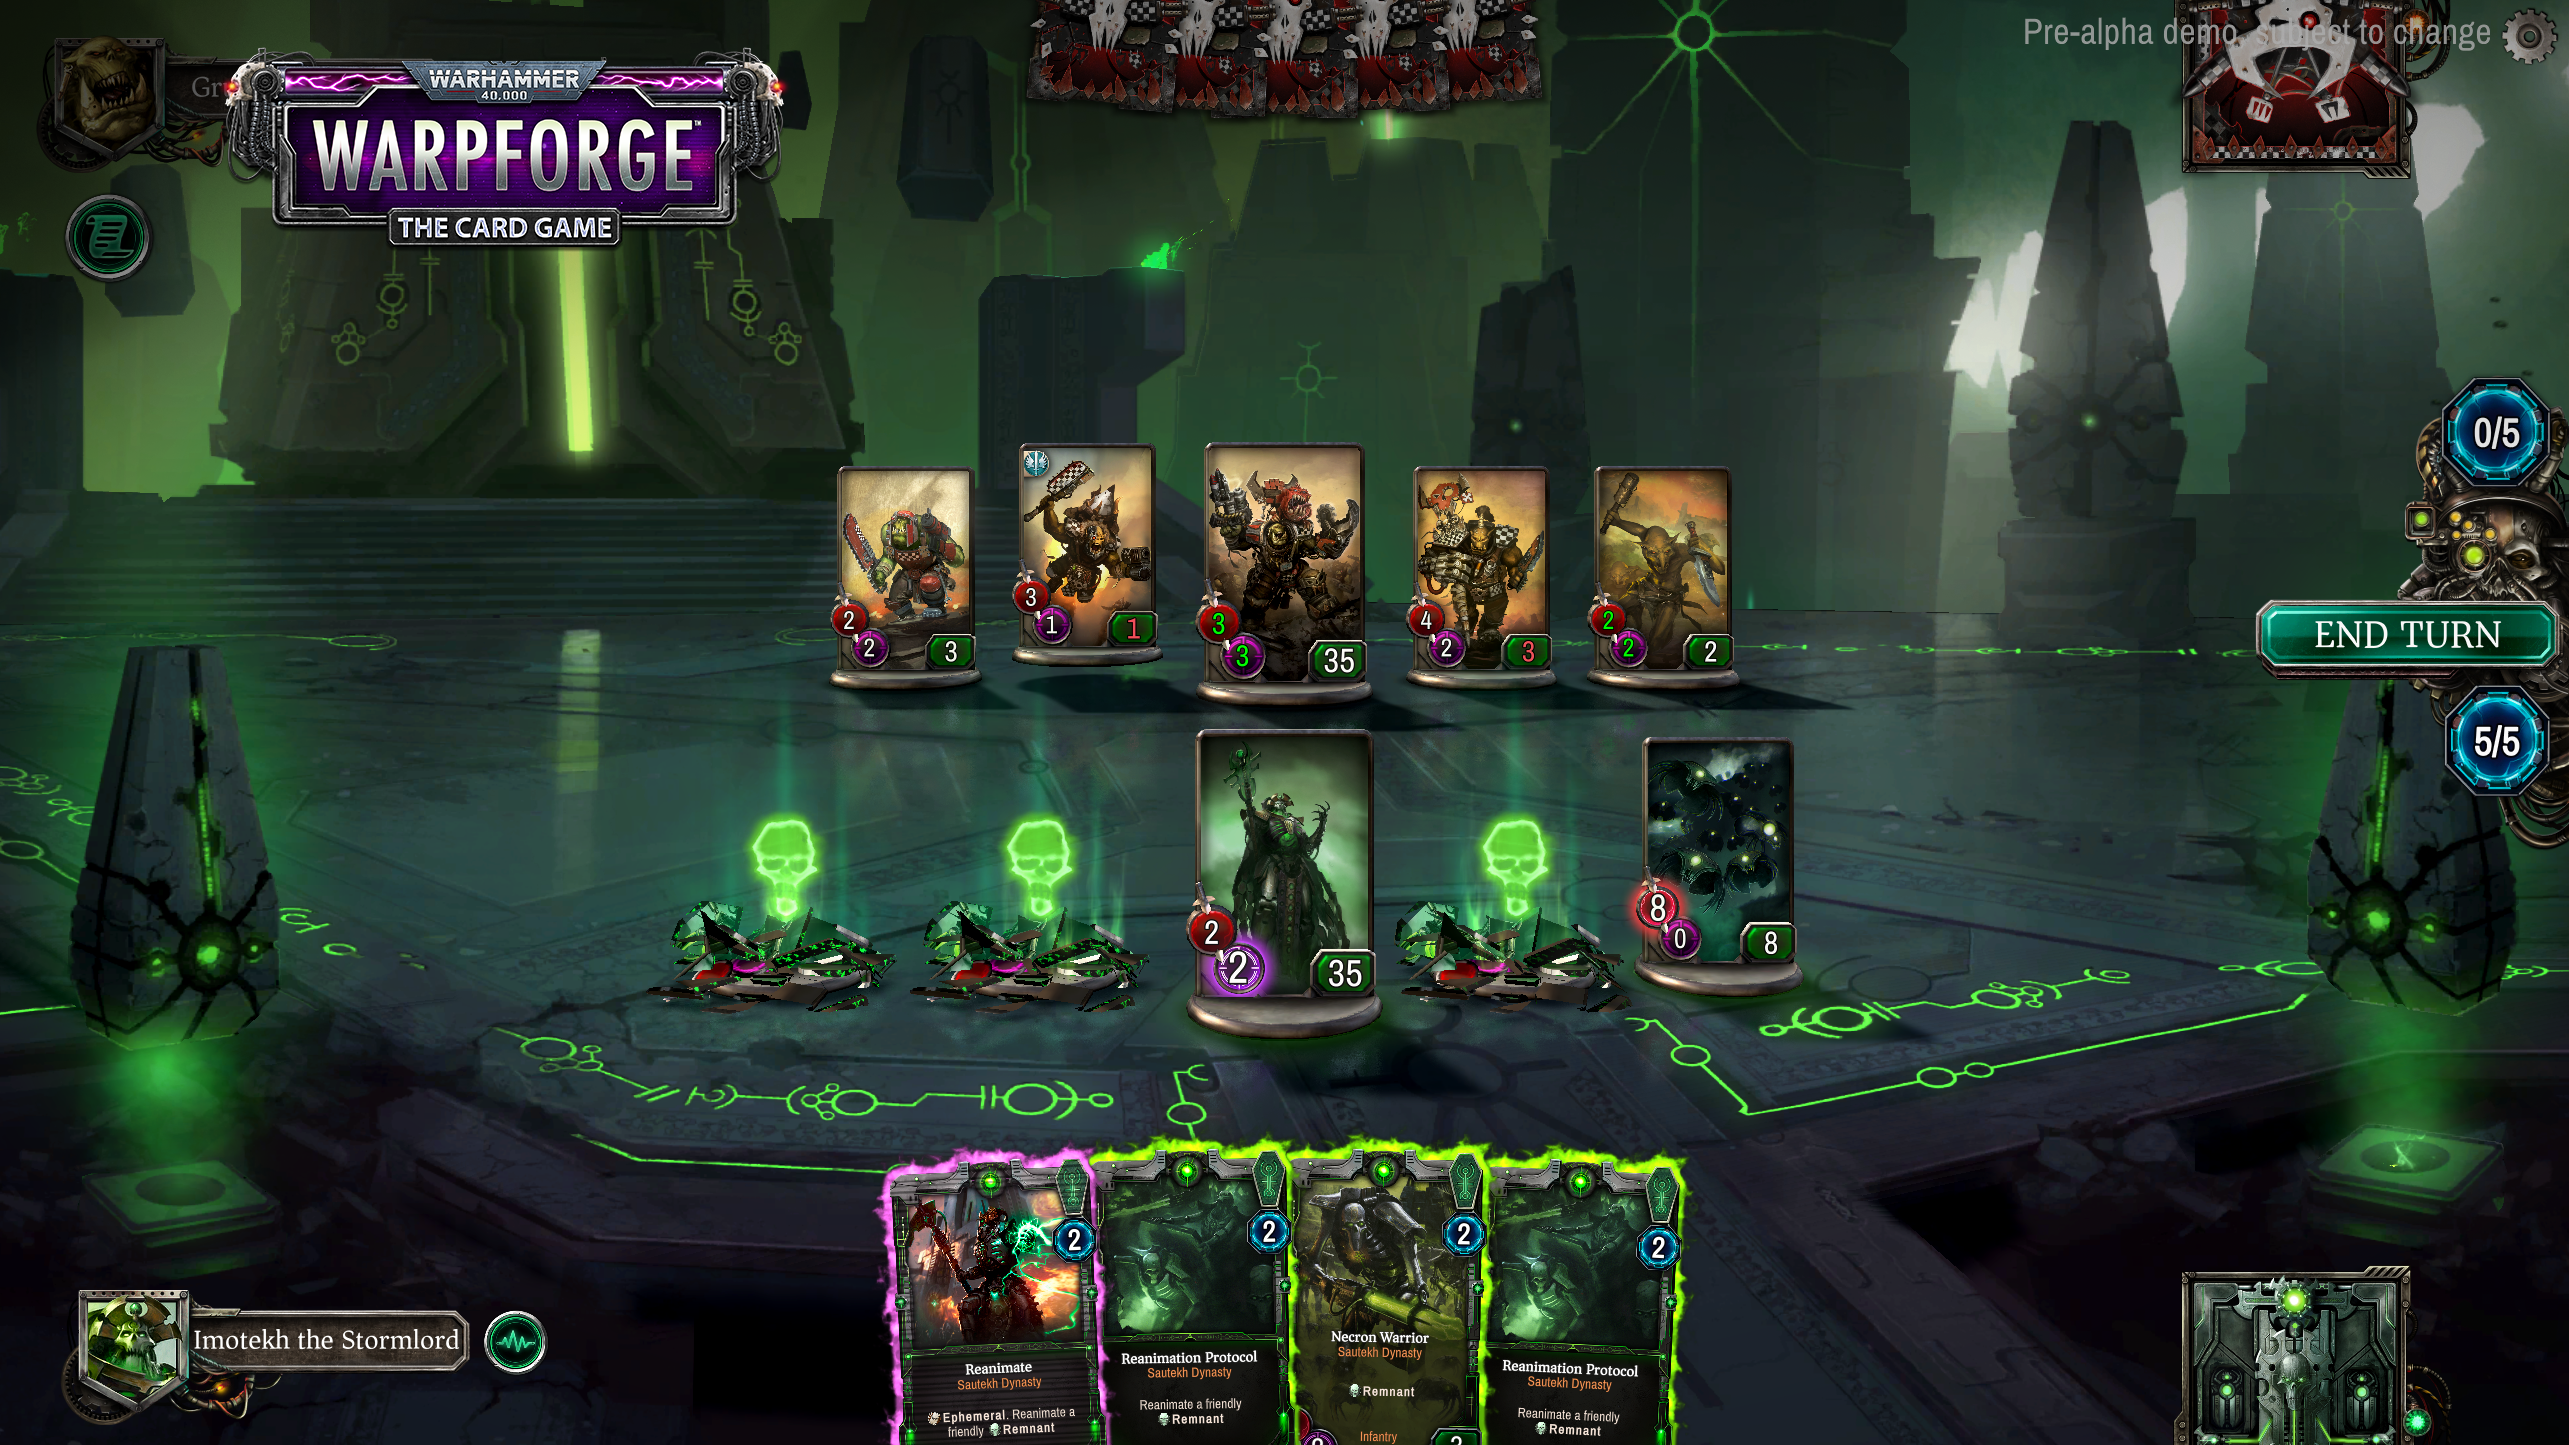 Screenshot from Warhammer 40,000: Warpforge of the Necrons battle arena.